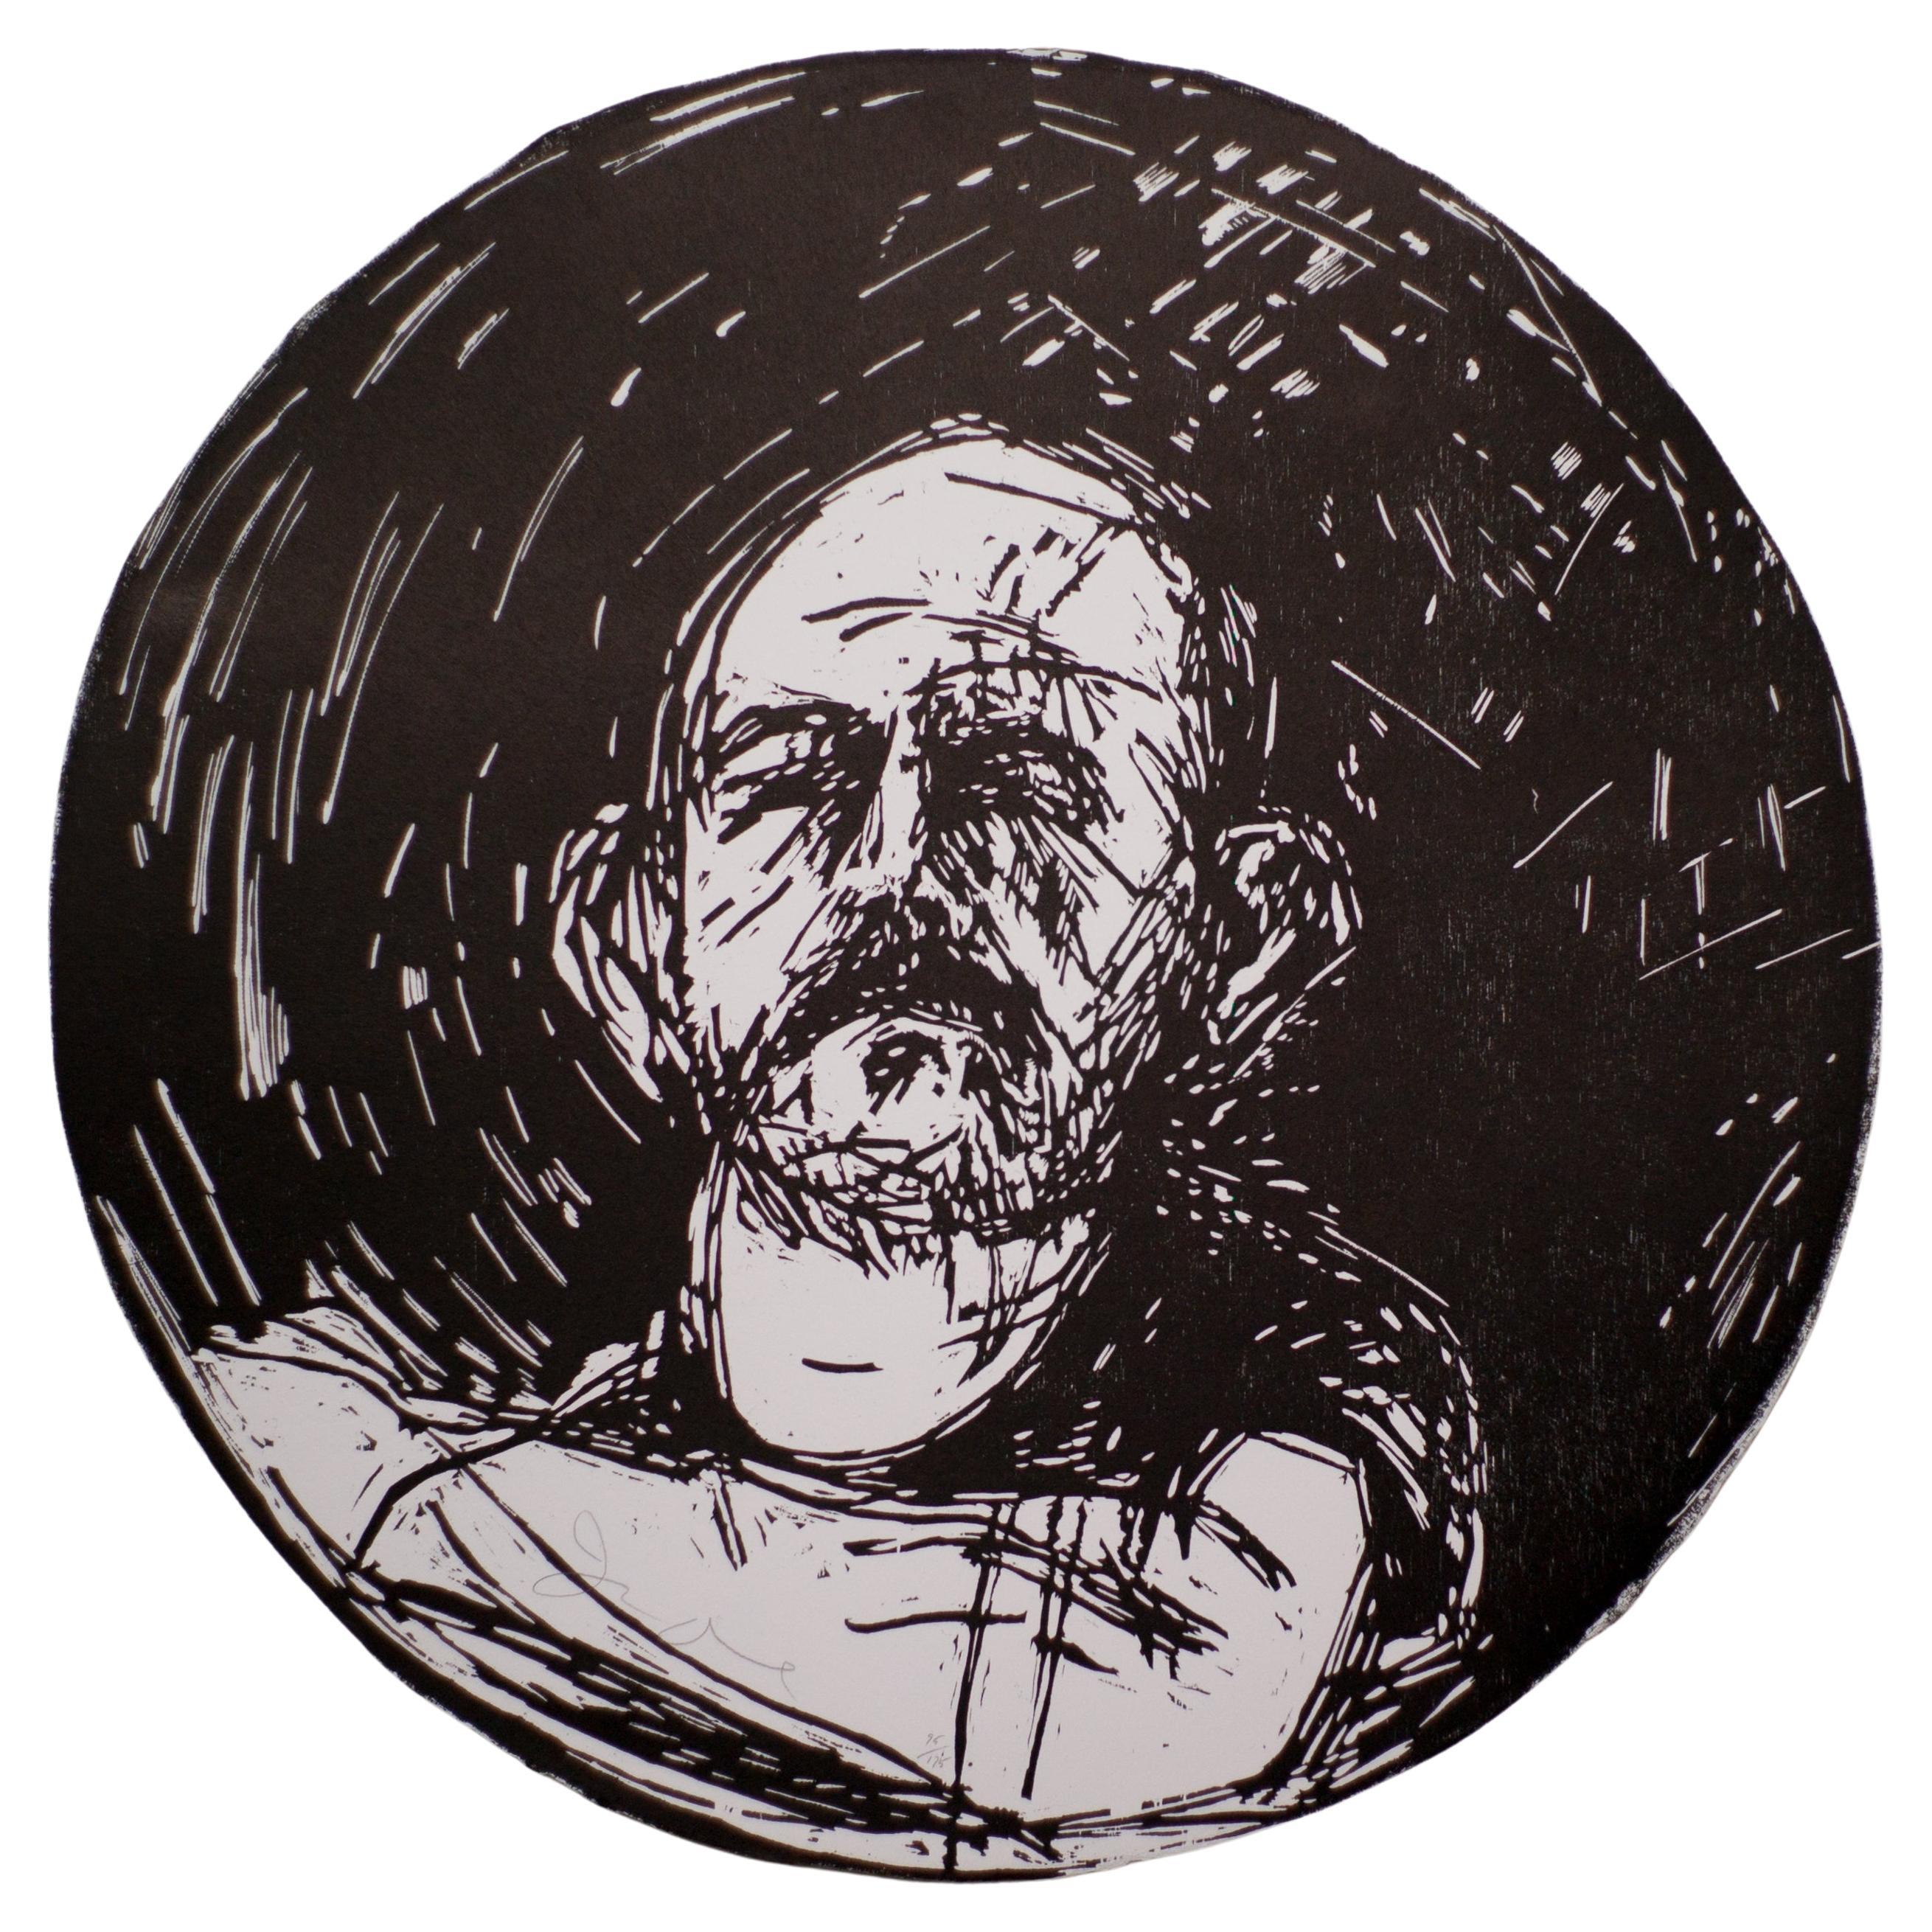 Jim Dine, Sans titre, extrait de "Self-Portrait in a Convex Mirror" (Self-Portrait dans un miroir convexe)